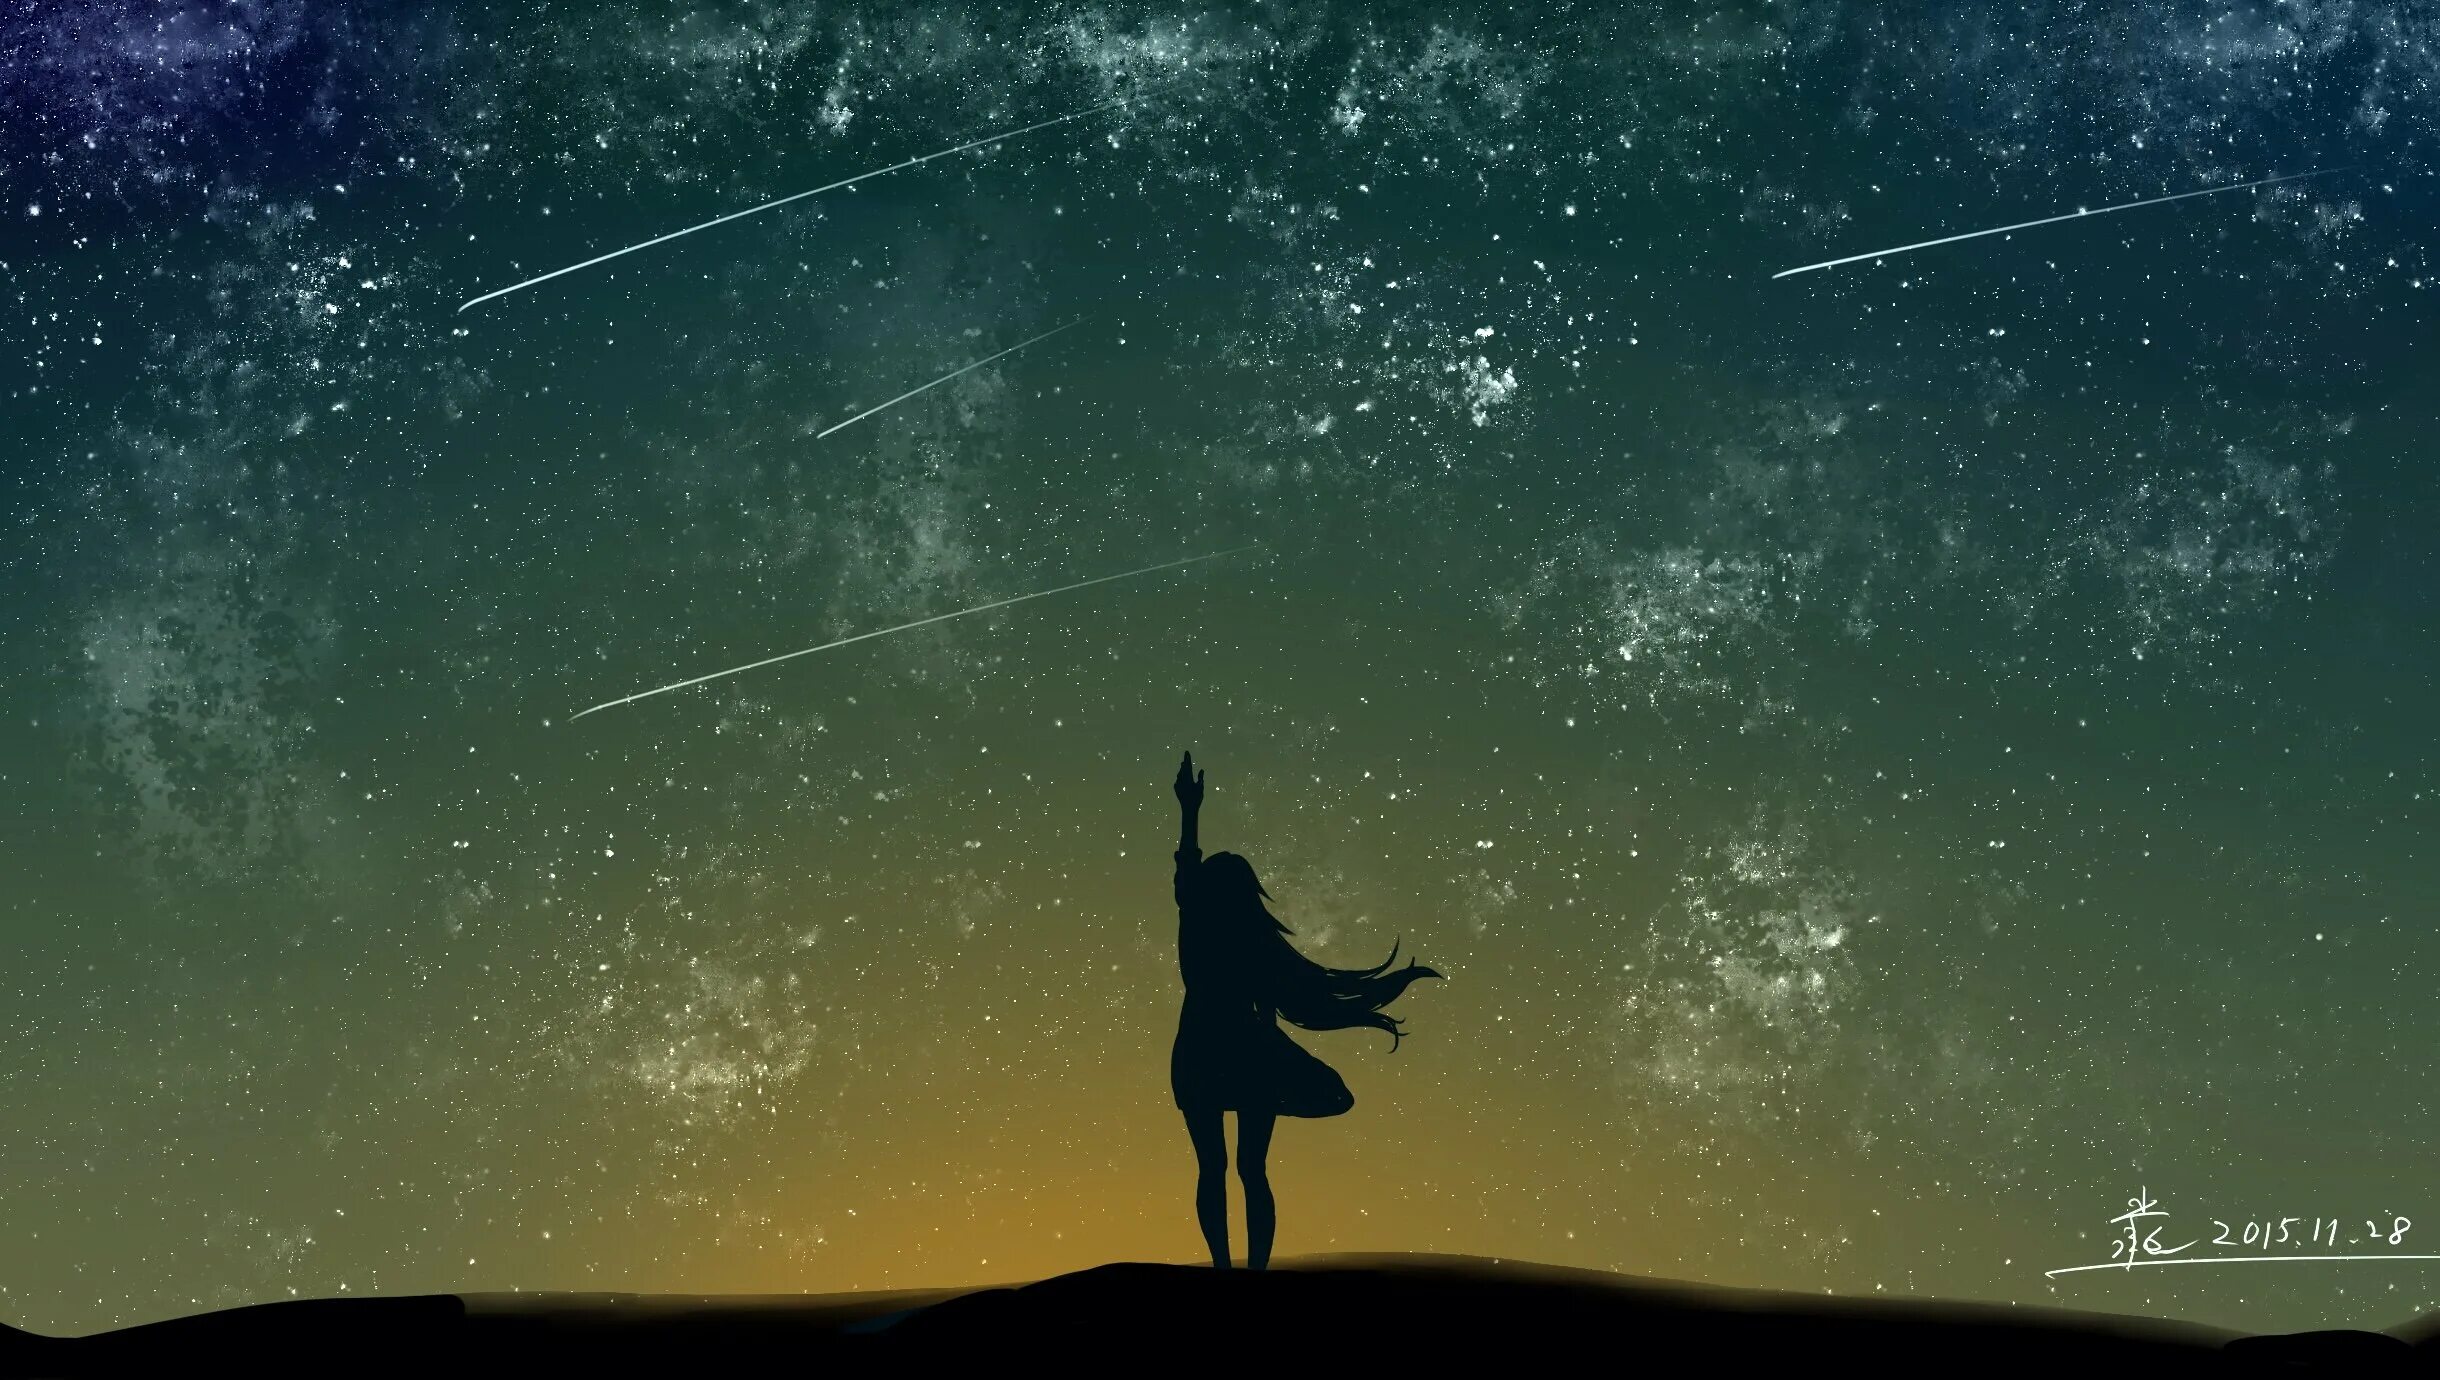 Девушка на фоне звездного неба. Девочка на фоне звездного неба. Человек на фоне звездного неба. Силуэты на фоне звездного неба. Почему люди тянутся к звездам